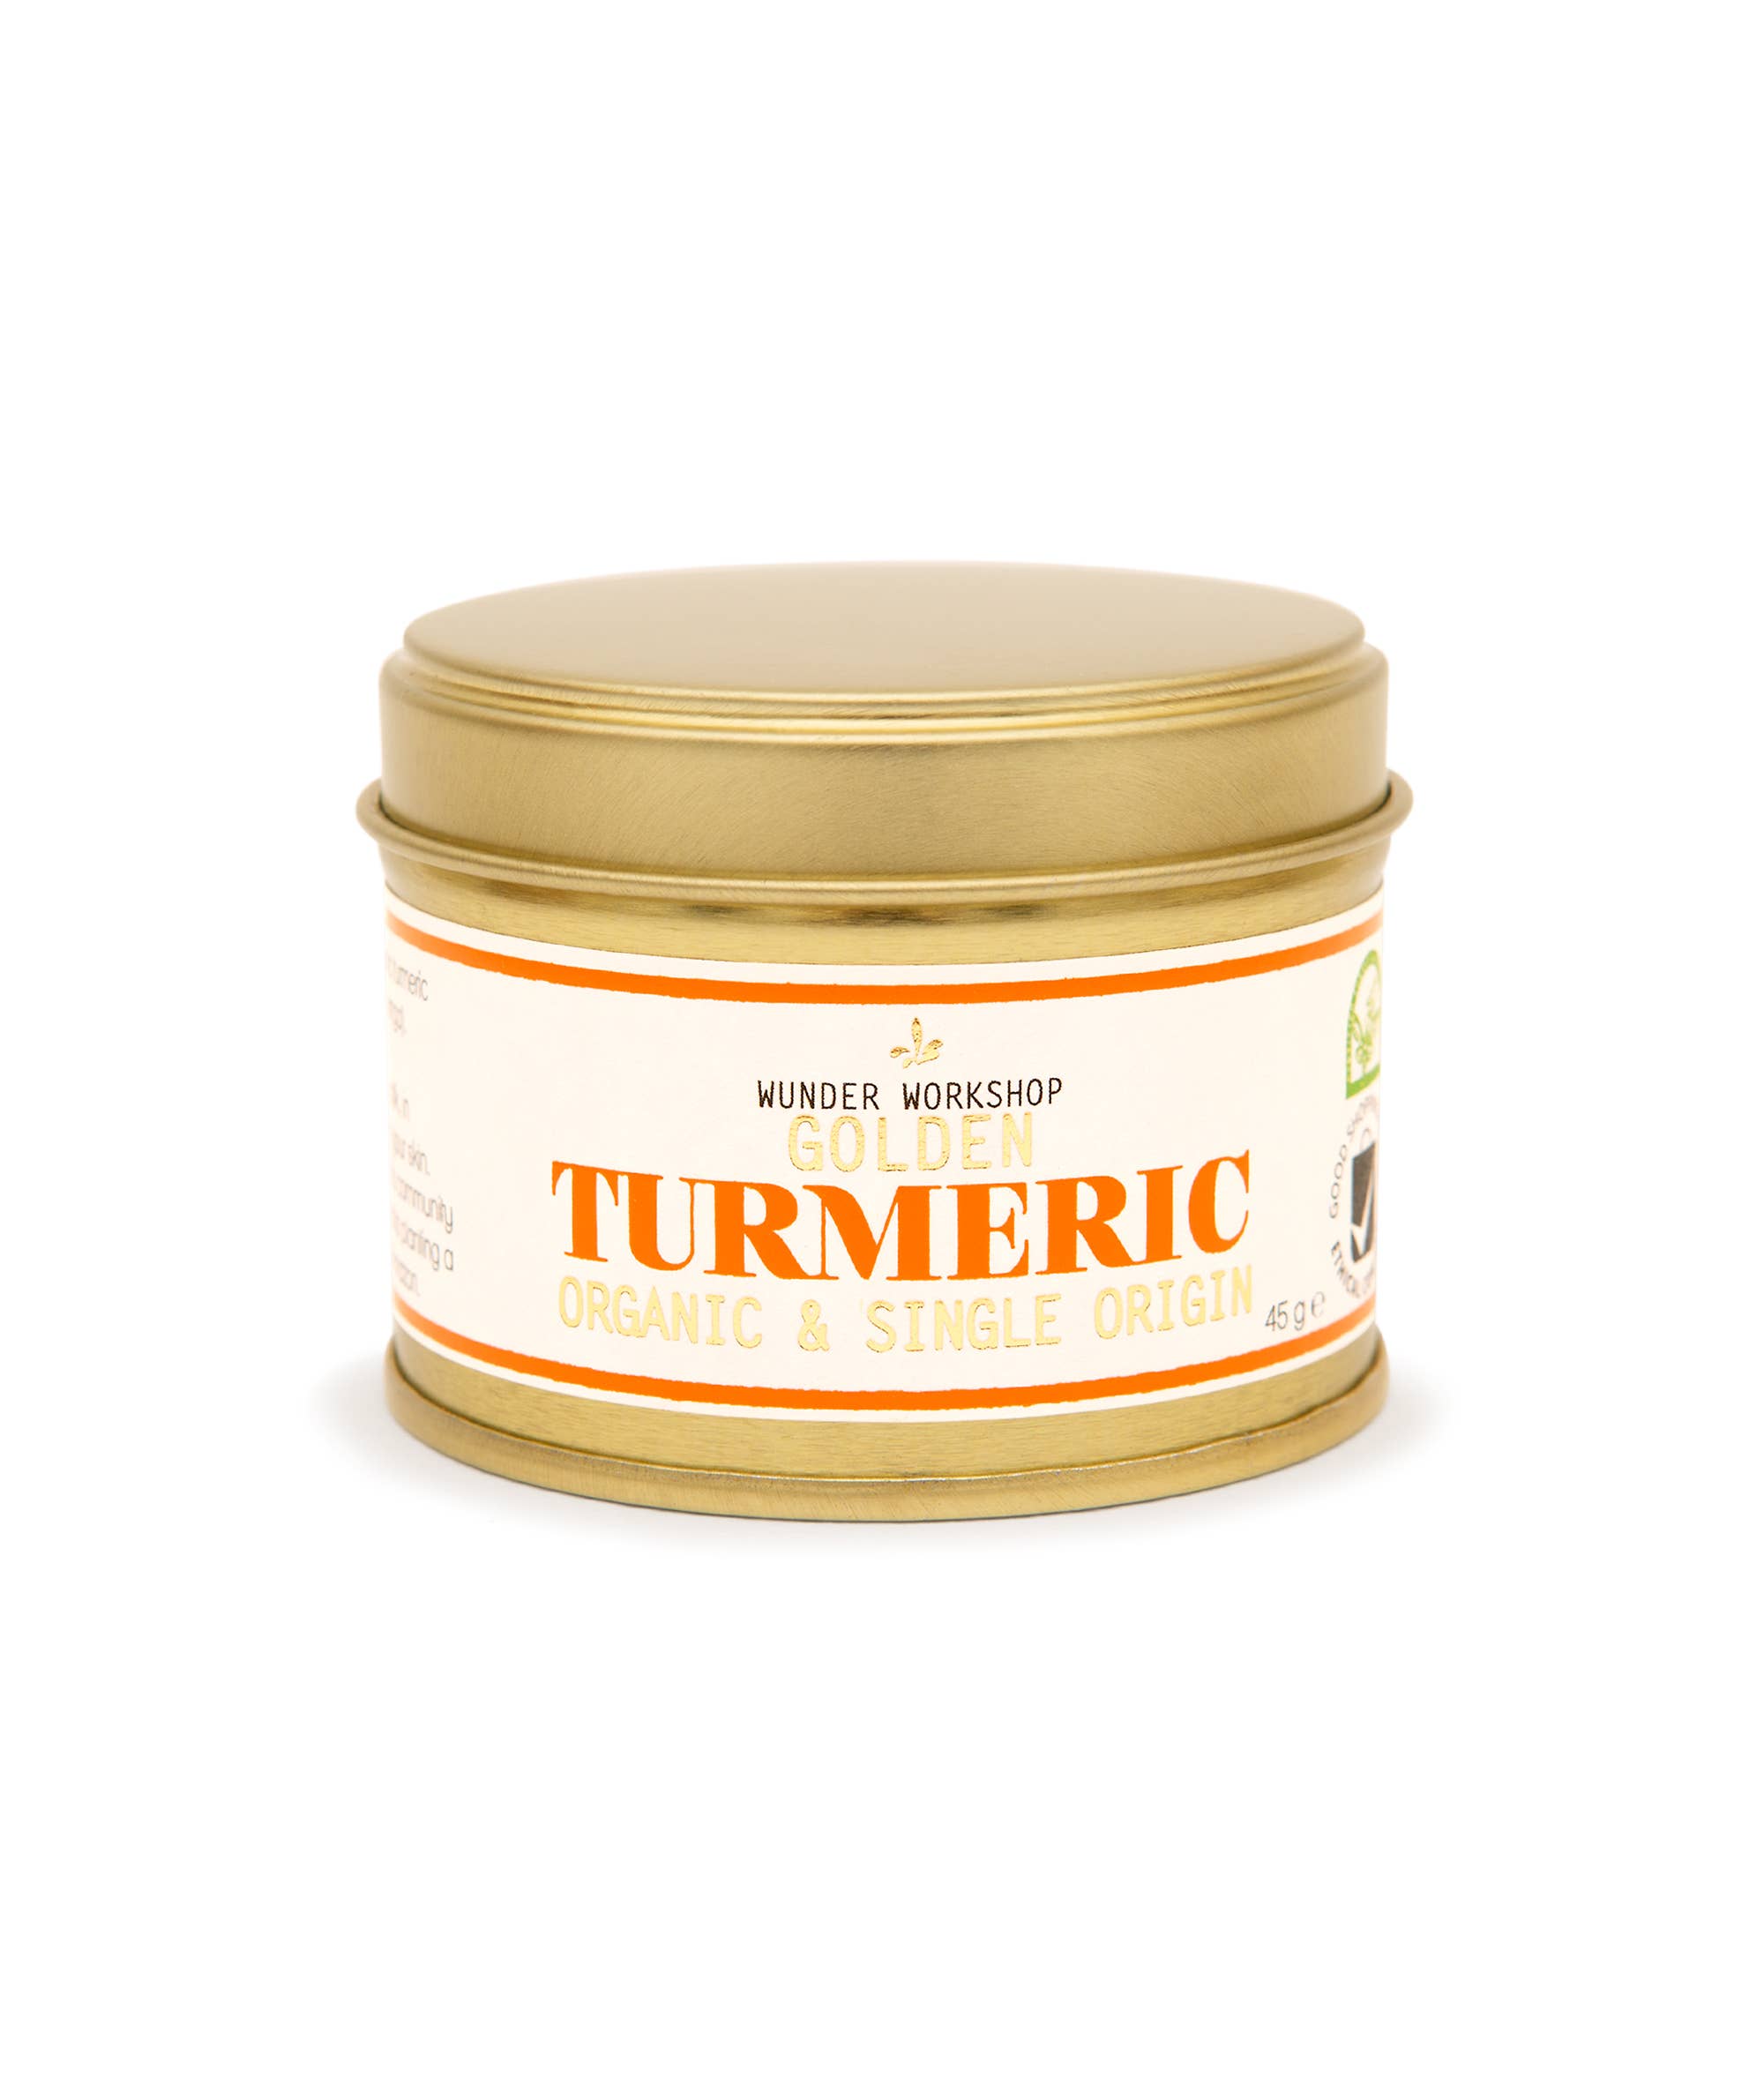 Golden Turmeric Powder - Organic & Single Origin (40g)